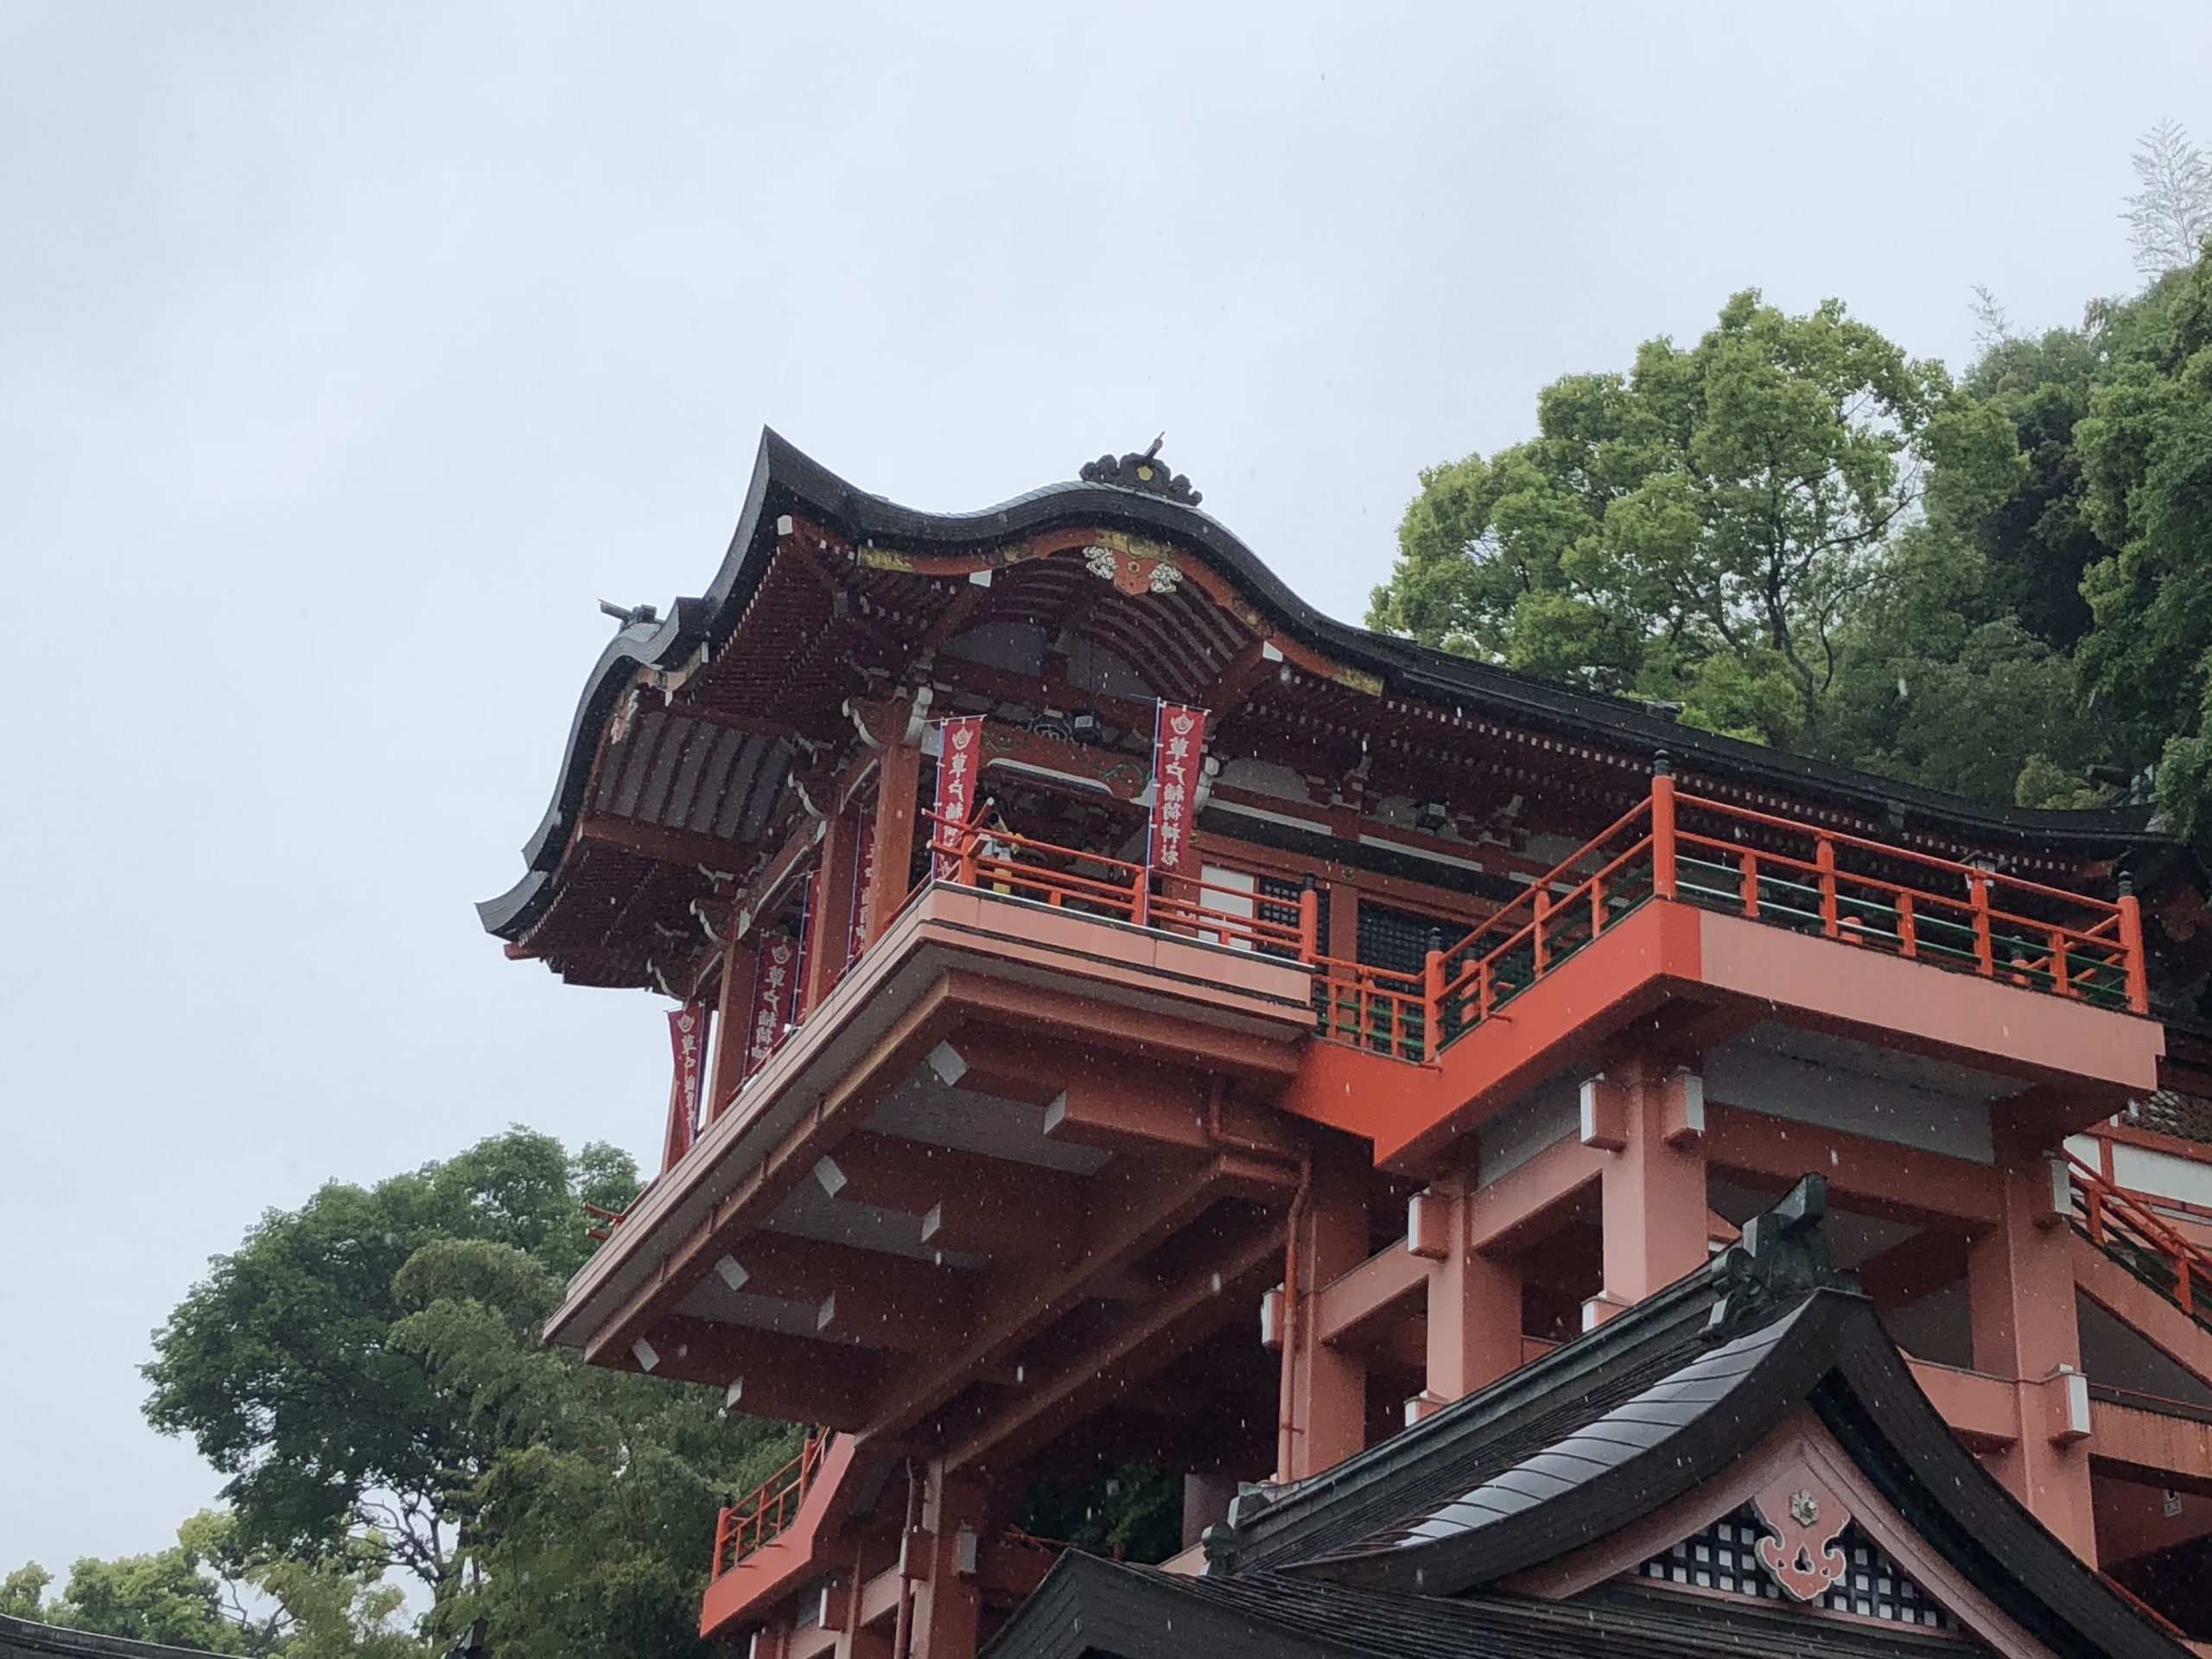 草戸稲荷神社 アイラブふくやま システムハウス タカハシの公式ホームページです。